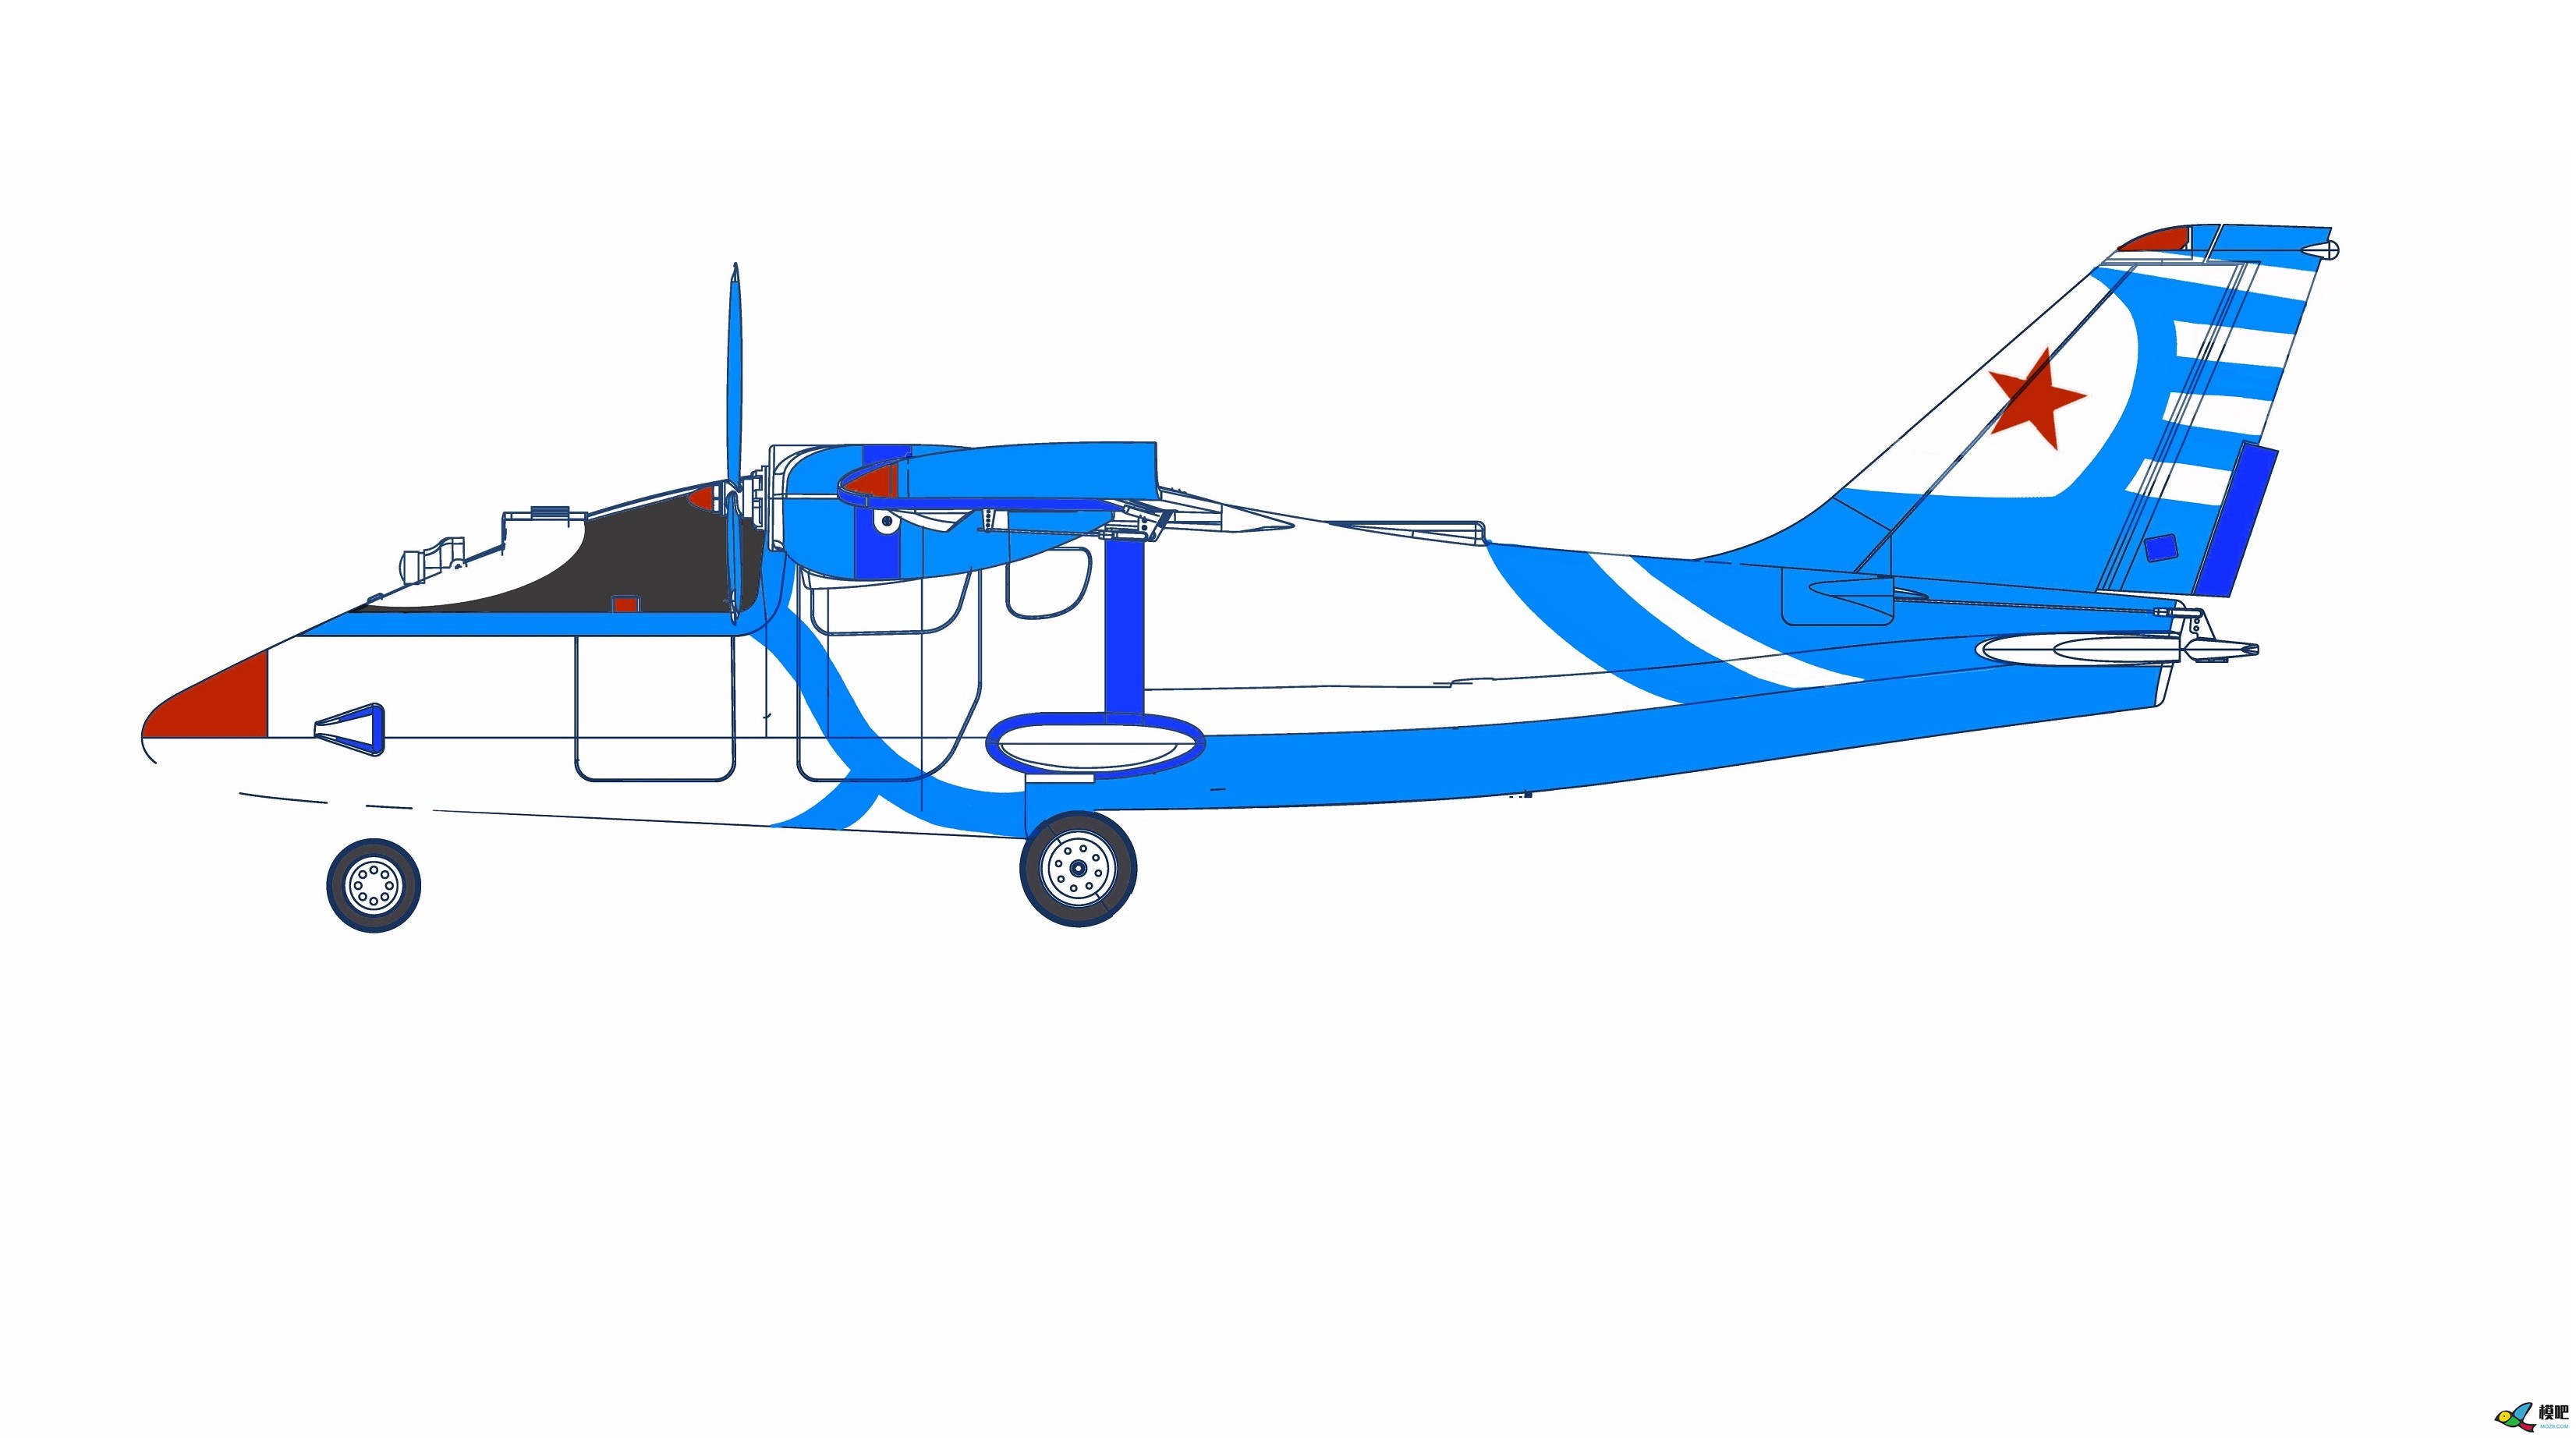 2020年第七期免费送模型：中航电Binary班纳瑞FPV飞机涂装大赛  作者:飞舞天水间 5707 